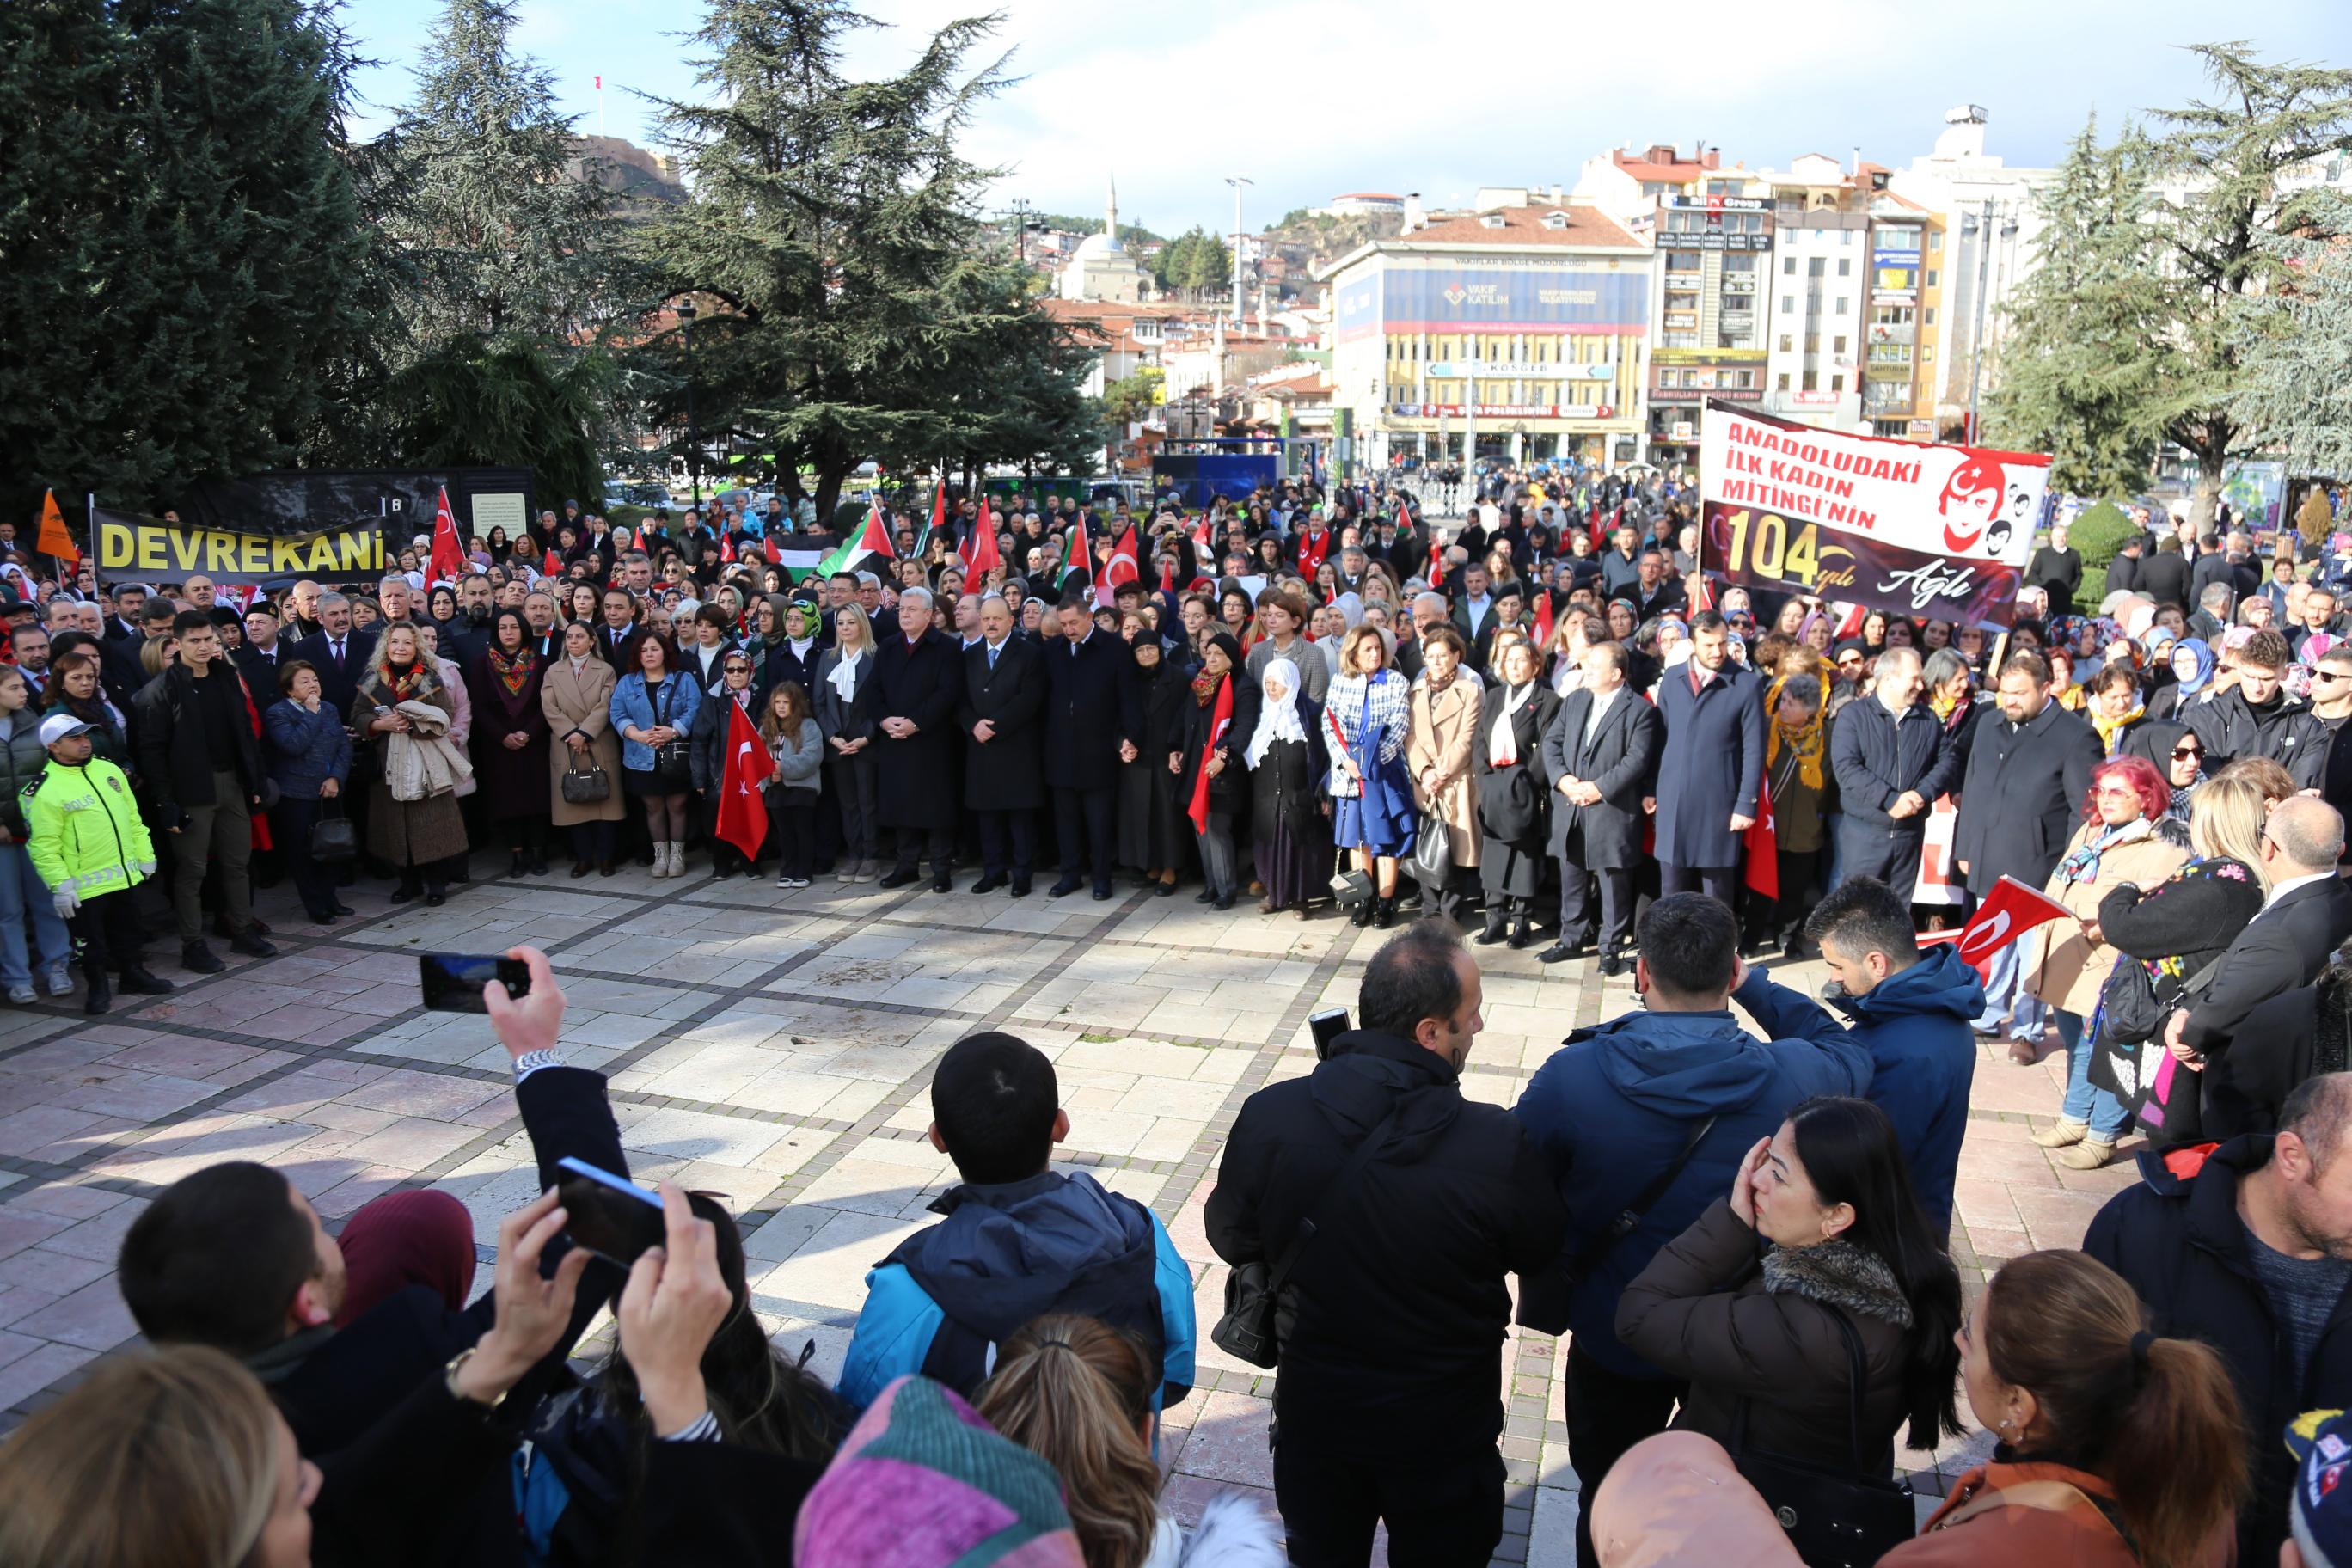 Anadolu'nun işgaline karşı Kastamonu'da 10 Aralık 1919 tarihinde gerçekleştirilen ilk kadın mitinginin 104. yıl dönümü, düzenlenen törenlerle kutlandı. İl merkezinde bulunan Kışla Parkı önünde bir araya gelen kadın dernekleri üyeleri ile vatandaşlar, önlerinde kağnı, ellerinde Türk bayraklarıyla Cumhuriyet Meydanı'na kadar yürüdü. Kadın dernekleri üyeleriyle siyasi partilerin kadın kolları temsilcileri, mitingin 104. yıl dönümü dolayısıyla Atatürk ve Şerife Bacı heykellerine çelenk bıraktı. Yüzlerce kişinin katıldığı yürüyüşte kadınlar, 104 yıl önceki birlik ruhunu yaşattı. Yürüyüşe, Kastamonu'nun ilçelerinde yaşayan kadınlar da yoğun katılım gösterdi. Yürüyüşe katılan Kastamonu Valisi Meftun Dallı, Kastamonu Belediye Başkanı Rahmi Galip Vidinlioğlu, milletvekilleri, protokol üyeleri ve STK temsilcileri de kadınlarla birlikte yürüdü. Yürüyüşte bazı vatandaşlar ise İsrail'in Filistin'deki zulmüne dikkat çekmek için Filistin bayrakları ile yürüdü.
